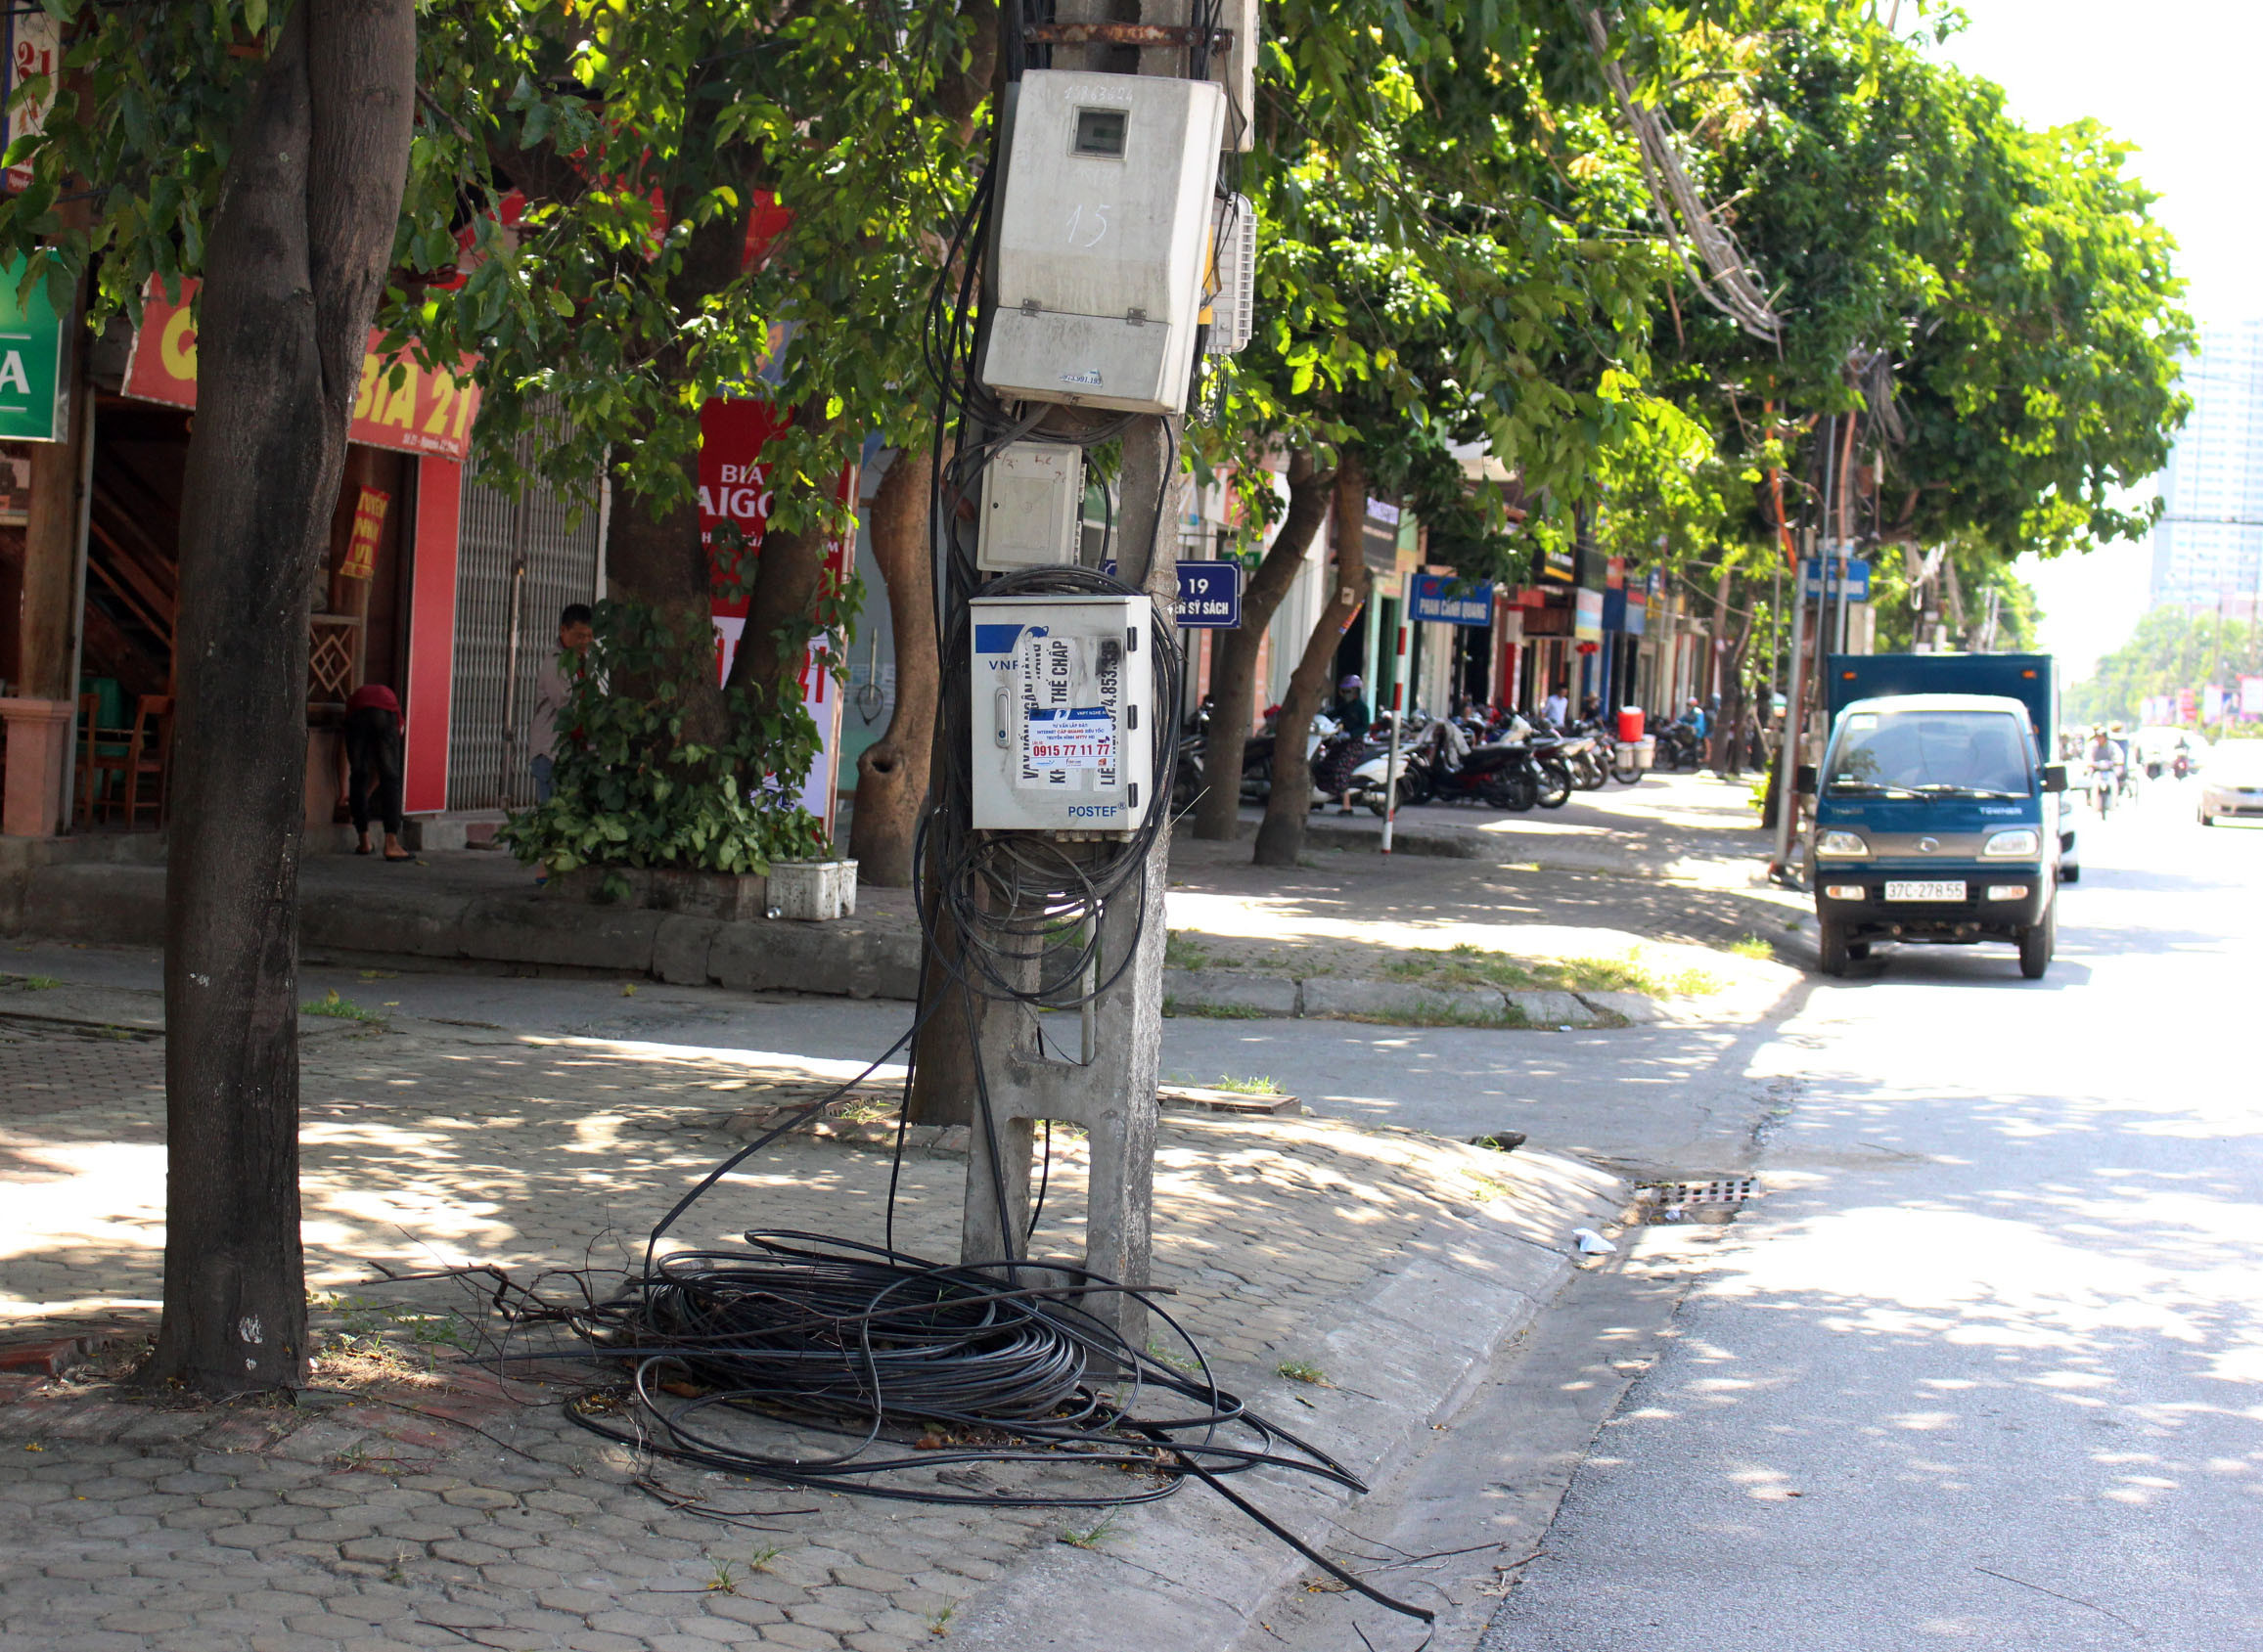 Cáp viễn thông thừa để bừa bãi ngay chân cột điện đường Nguyễn Sỹ sách, ảnh ĐinhNguyệt.